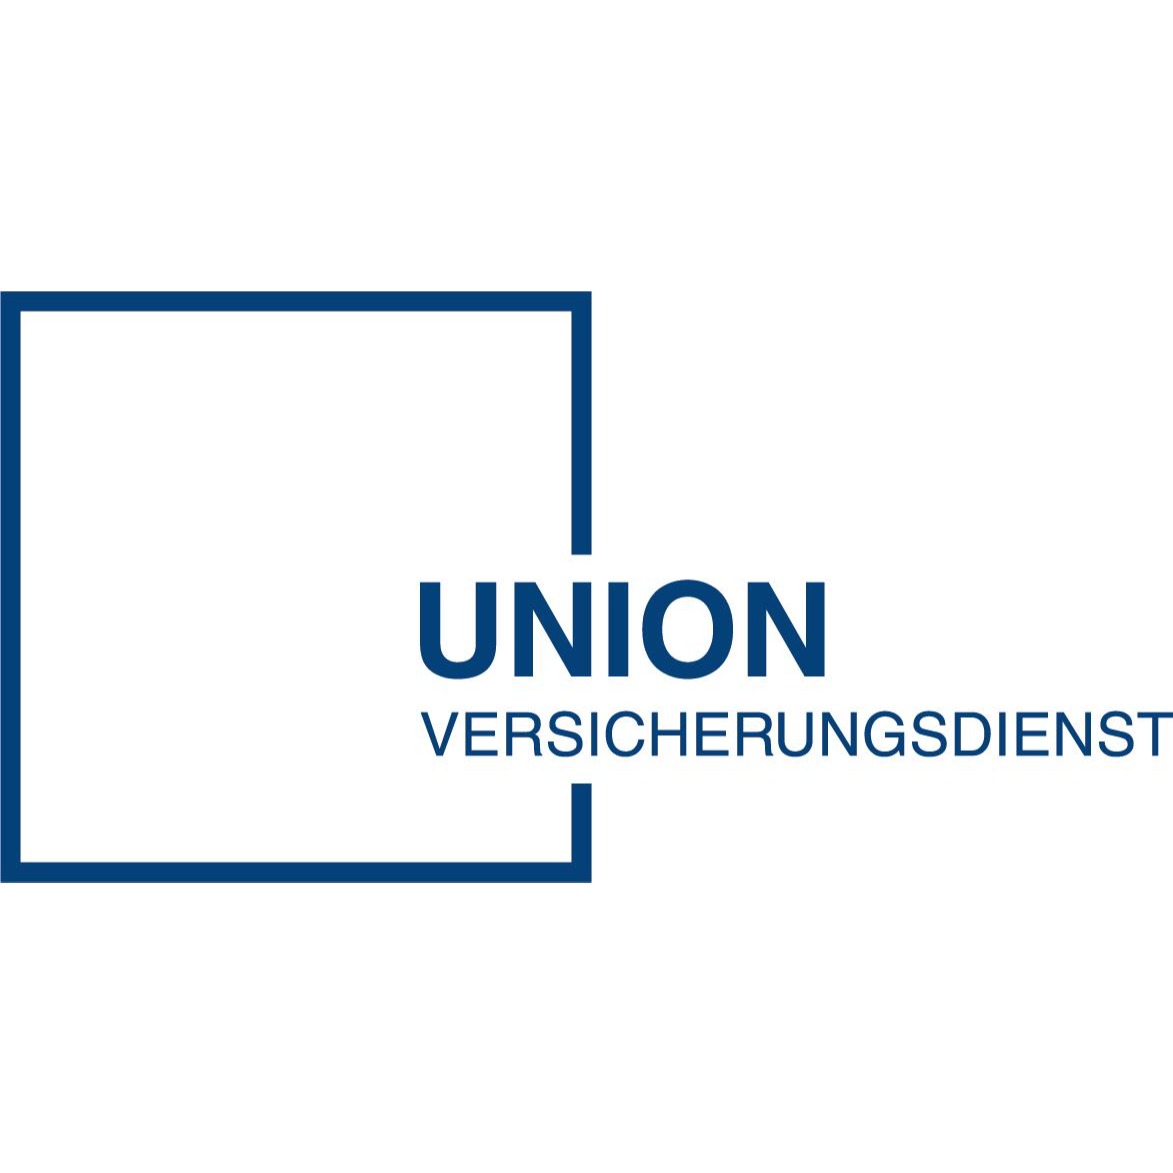 UNION Versicherungsdienst GmbH in Detmold - Logo